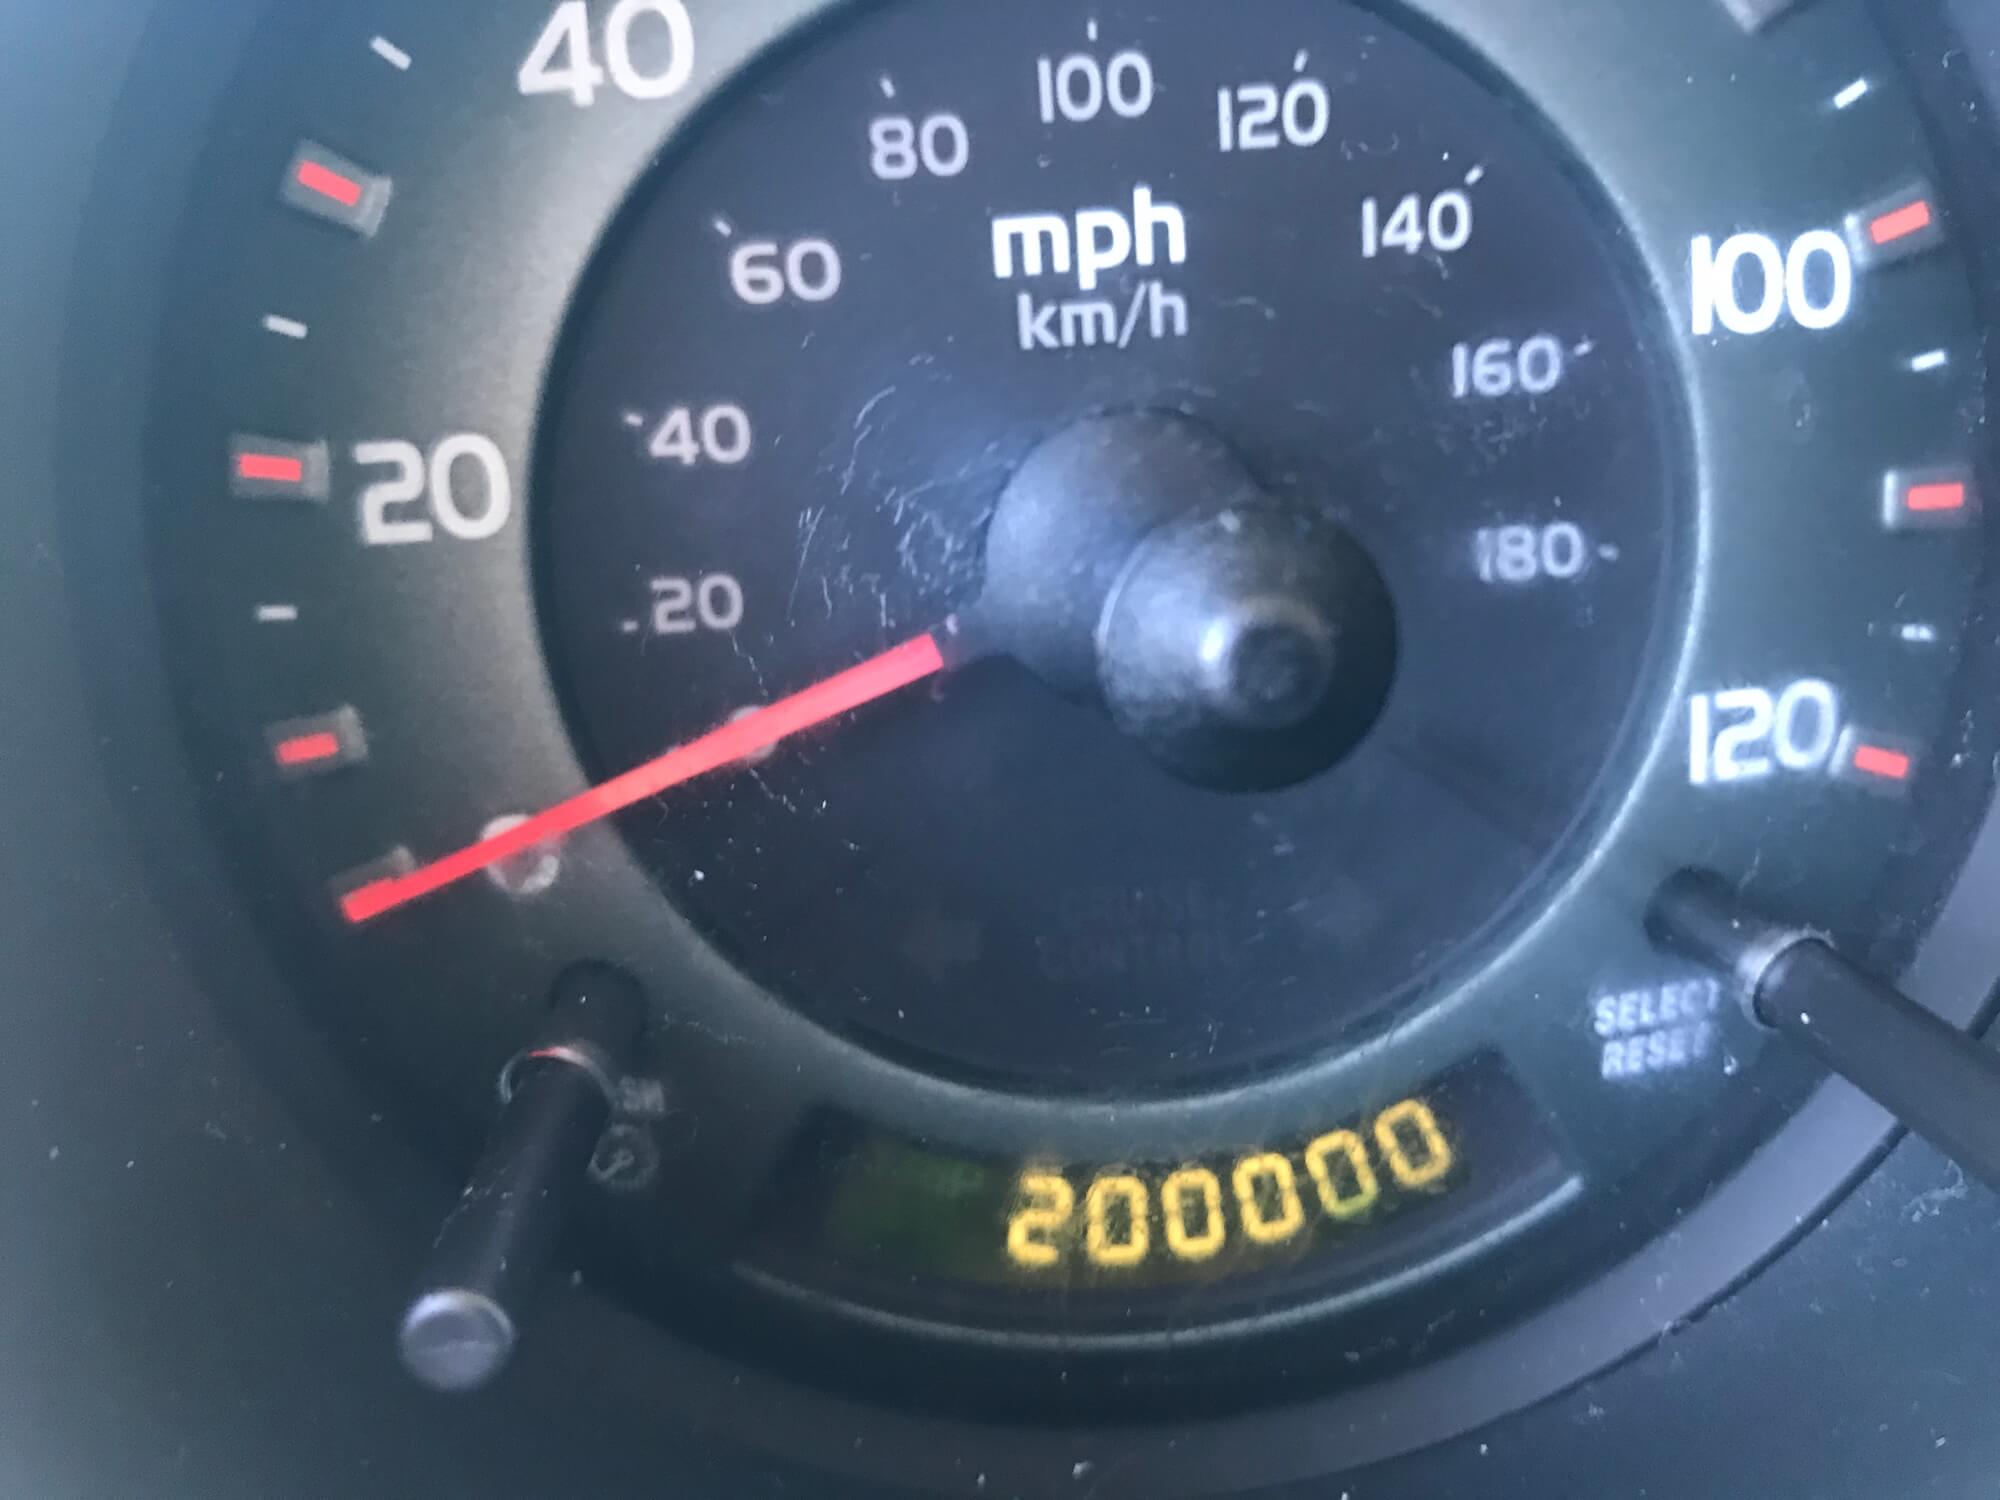 200k miles milestone for the car